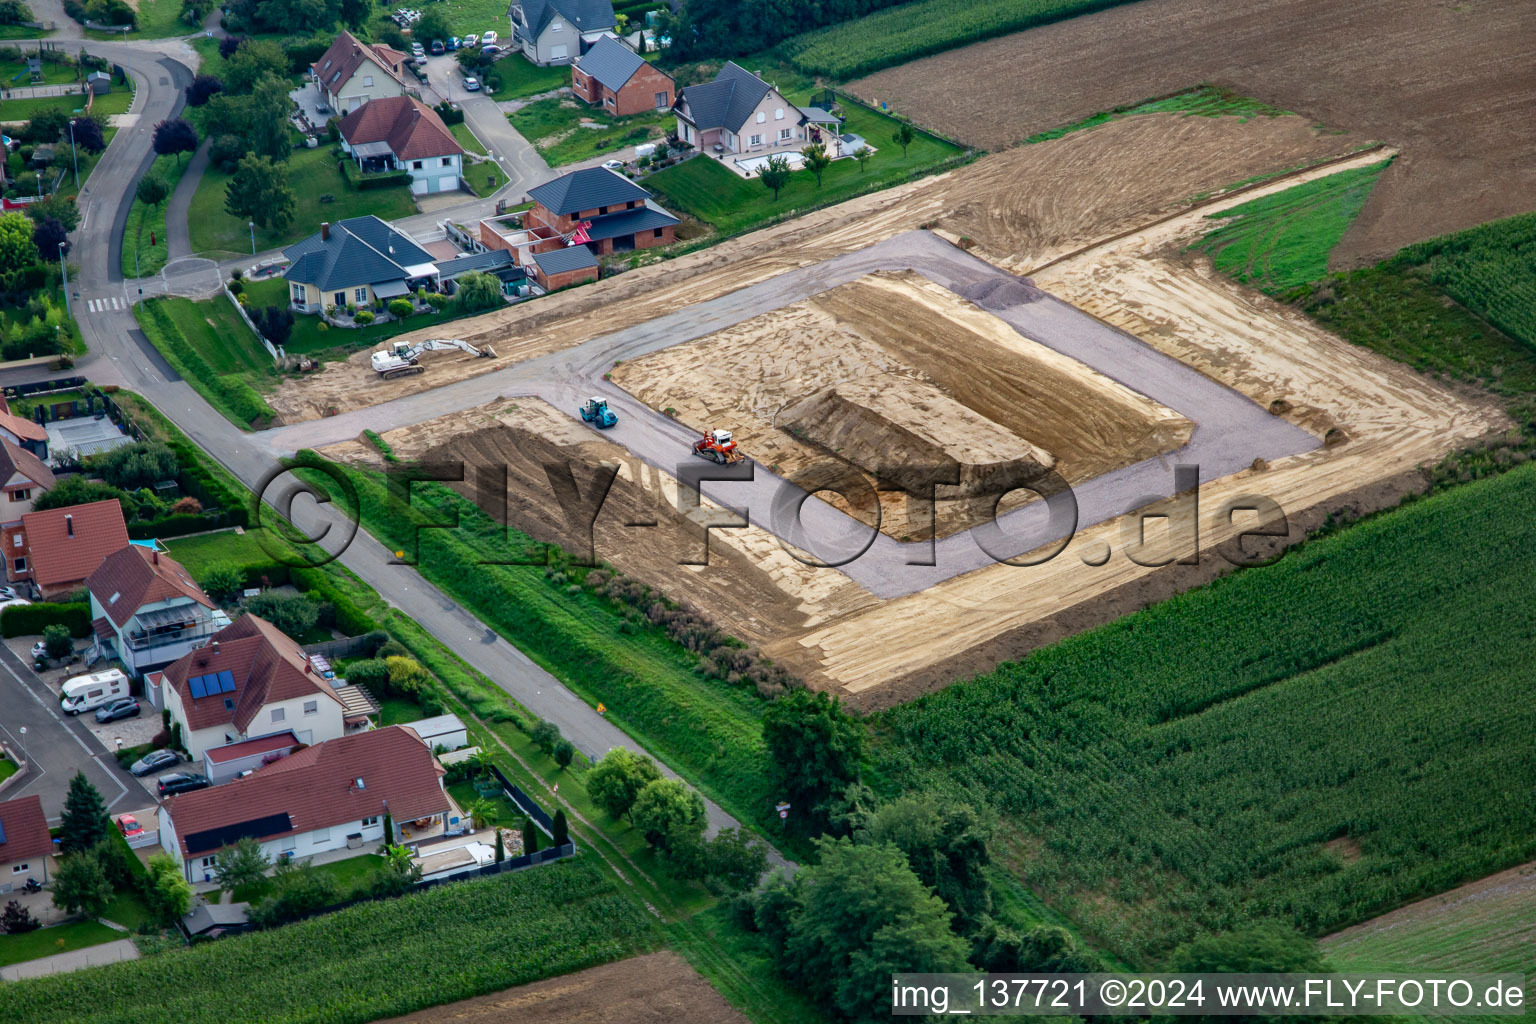 Vue aérienne de Développement d'une nouvelle zone de développement à Trimbach dans le département Bas Rhin, France